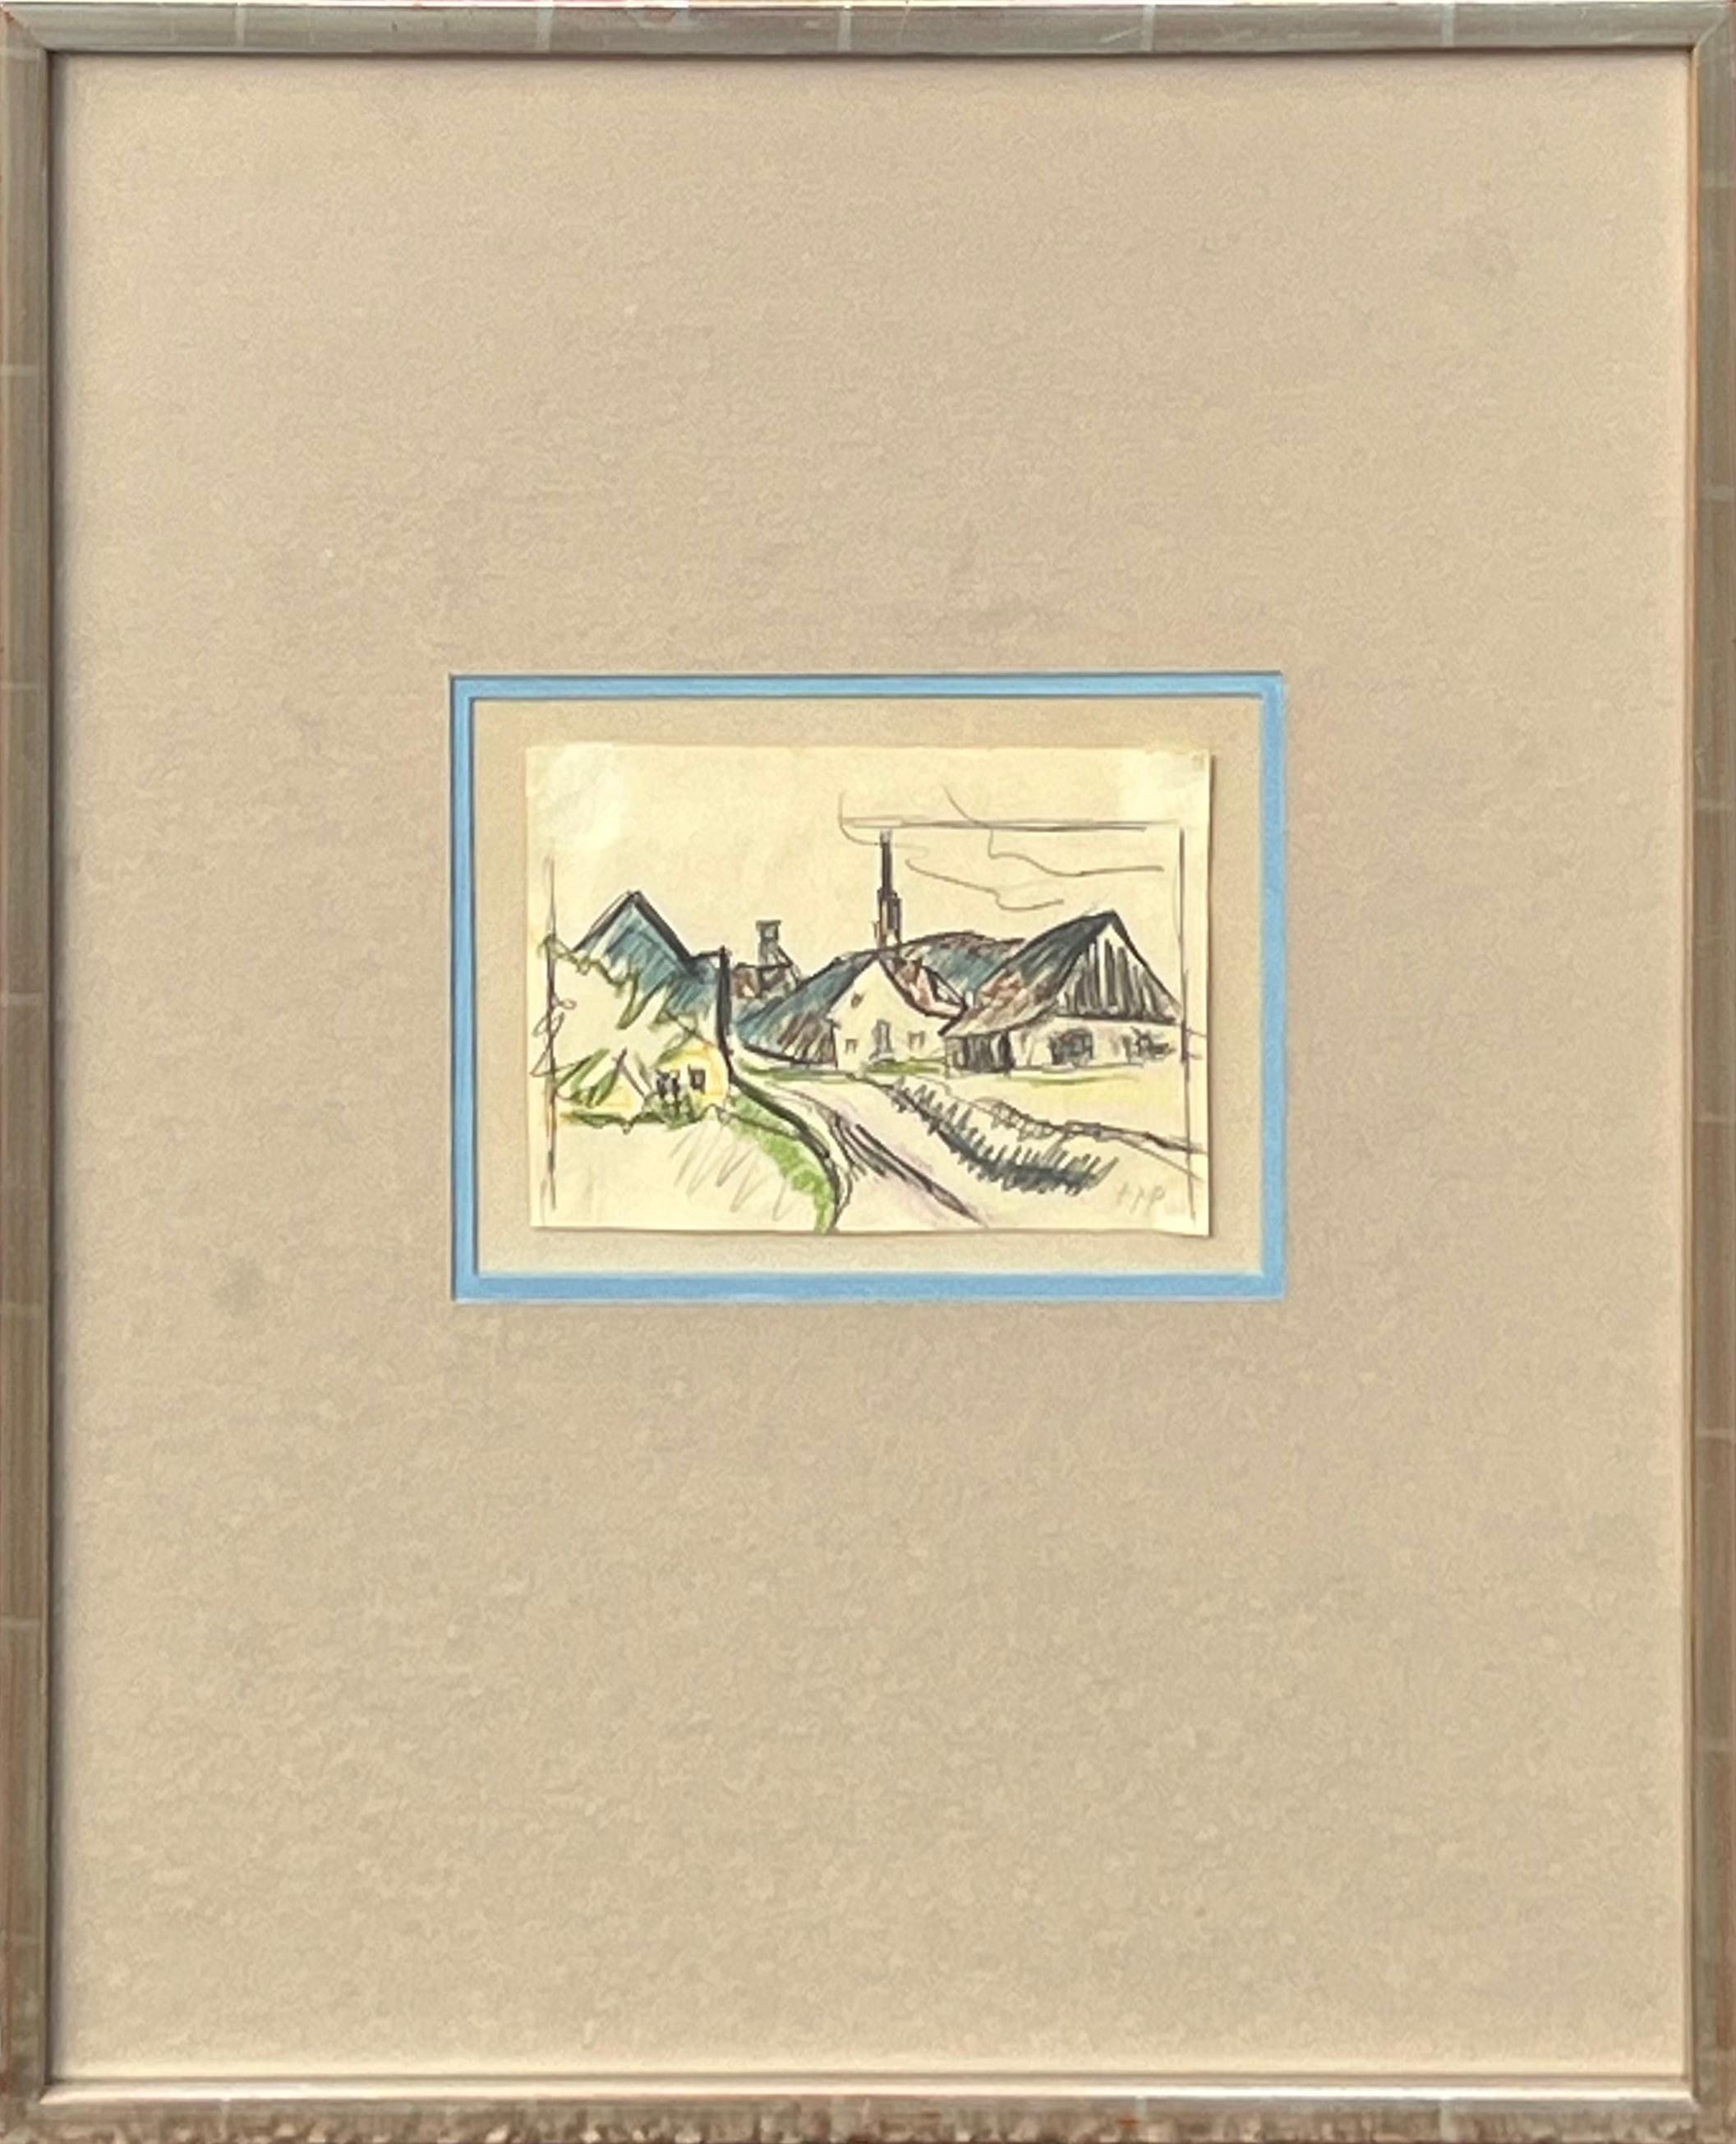 Landscape Art Herman Max Pechstein - « View of Village », dessin de paysage abstrait gestuel et ancien moderne représentant des maisons 